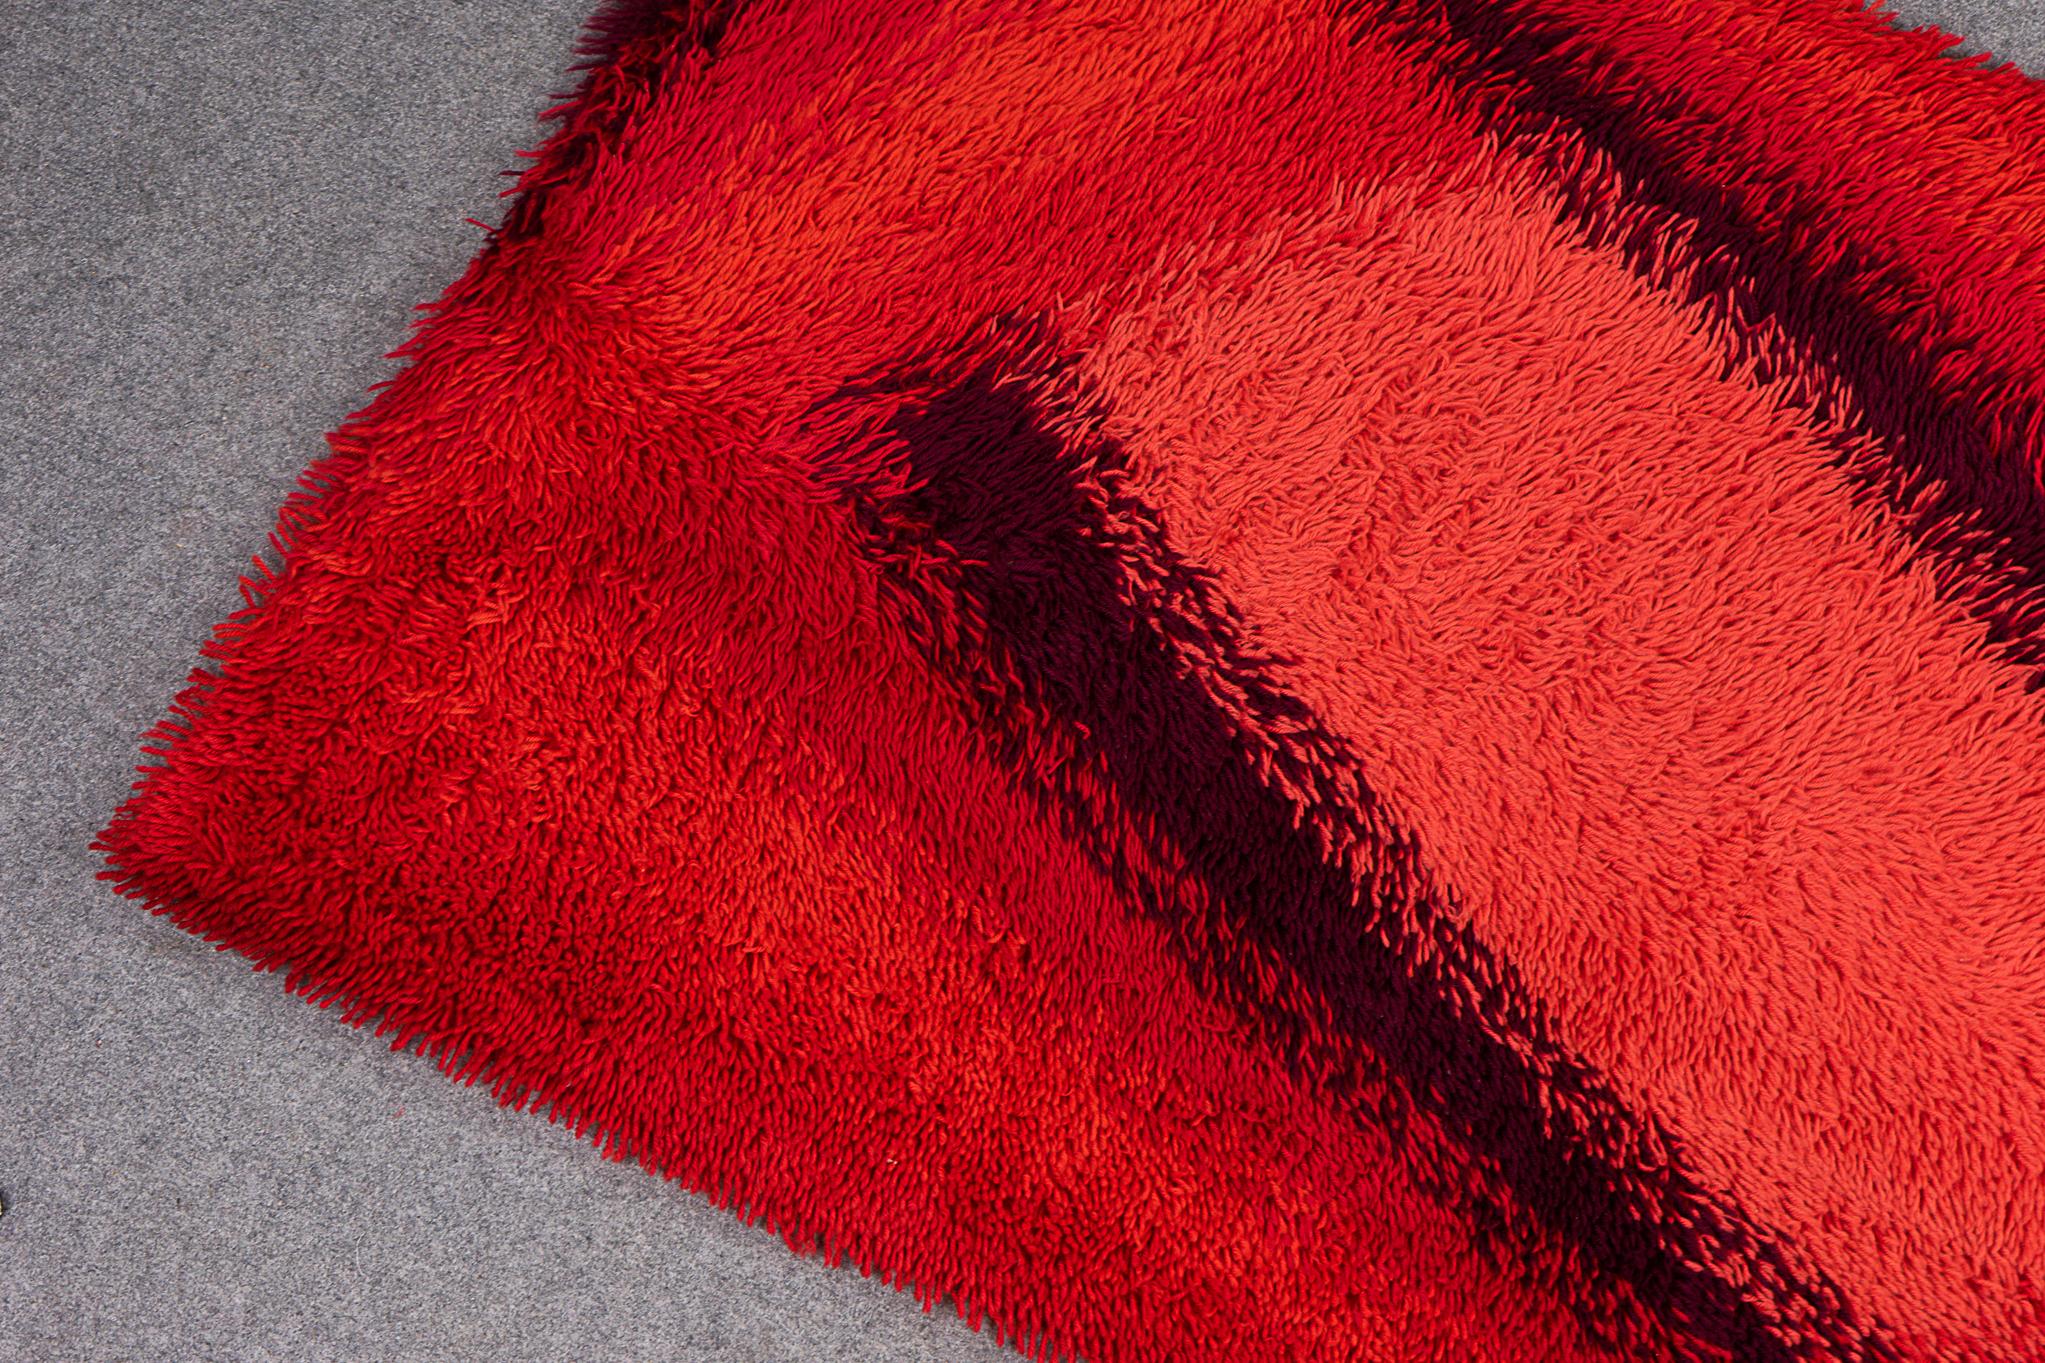 Skandinavischer Wollteppich für Rya aus den 1960er Jahren. Abstraktes grafisches Design in einem warmen Korallen-, Rot- und Kastanienbraun-Farbschema. Wunderschön als Wandbehang oder als Bodenteppich! Sehr schöner Vintage-Zustand, geringe